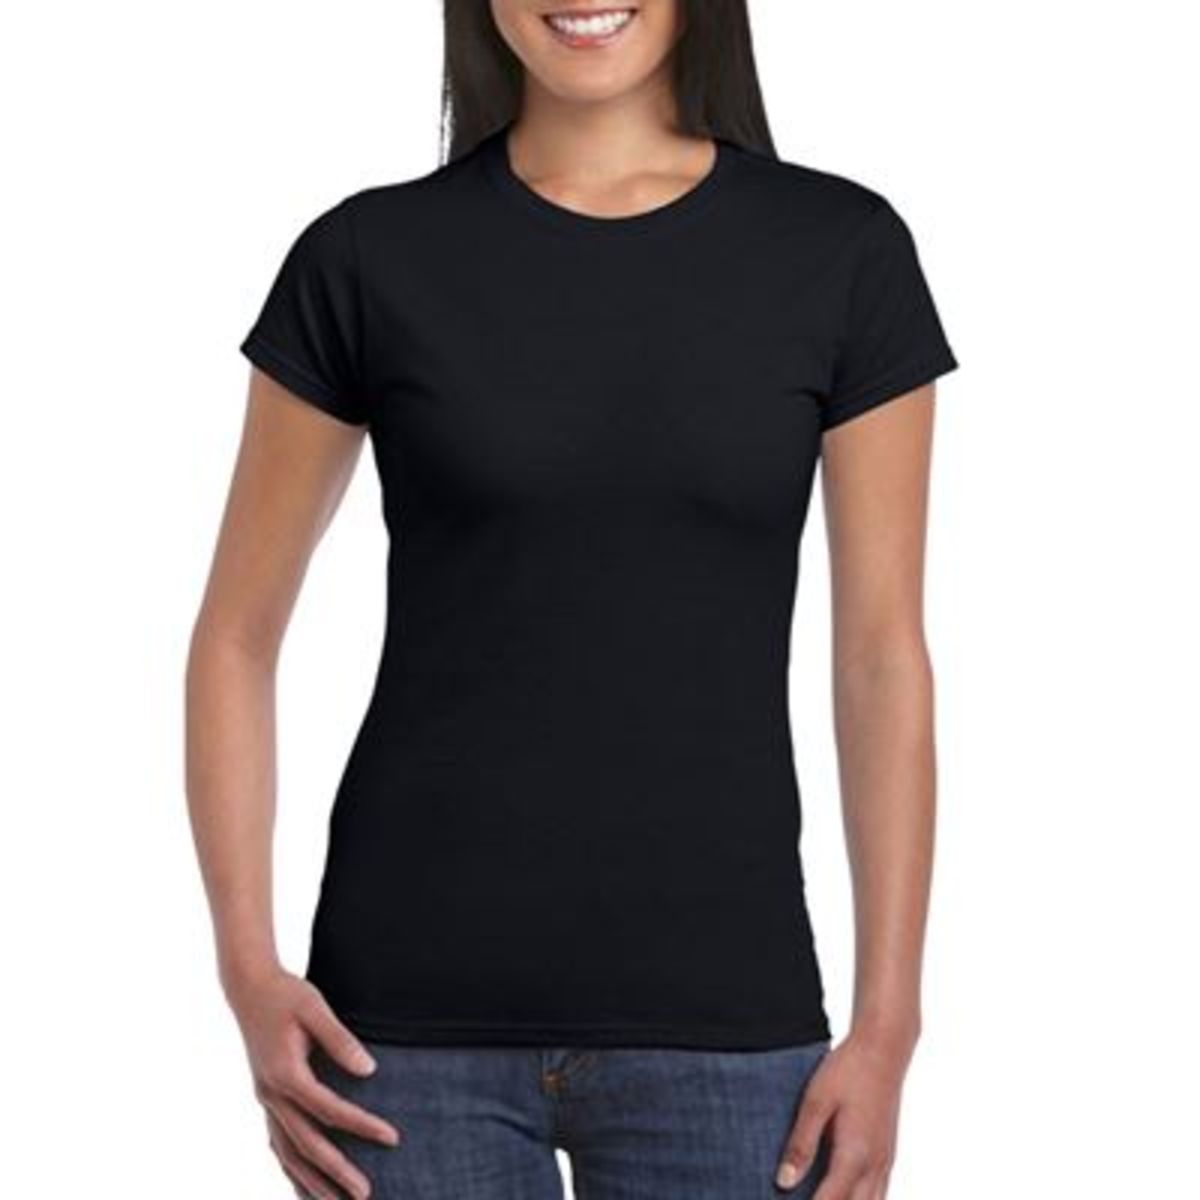 Tee-shirt femme col rond noir T.XL